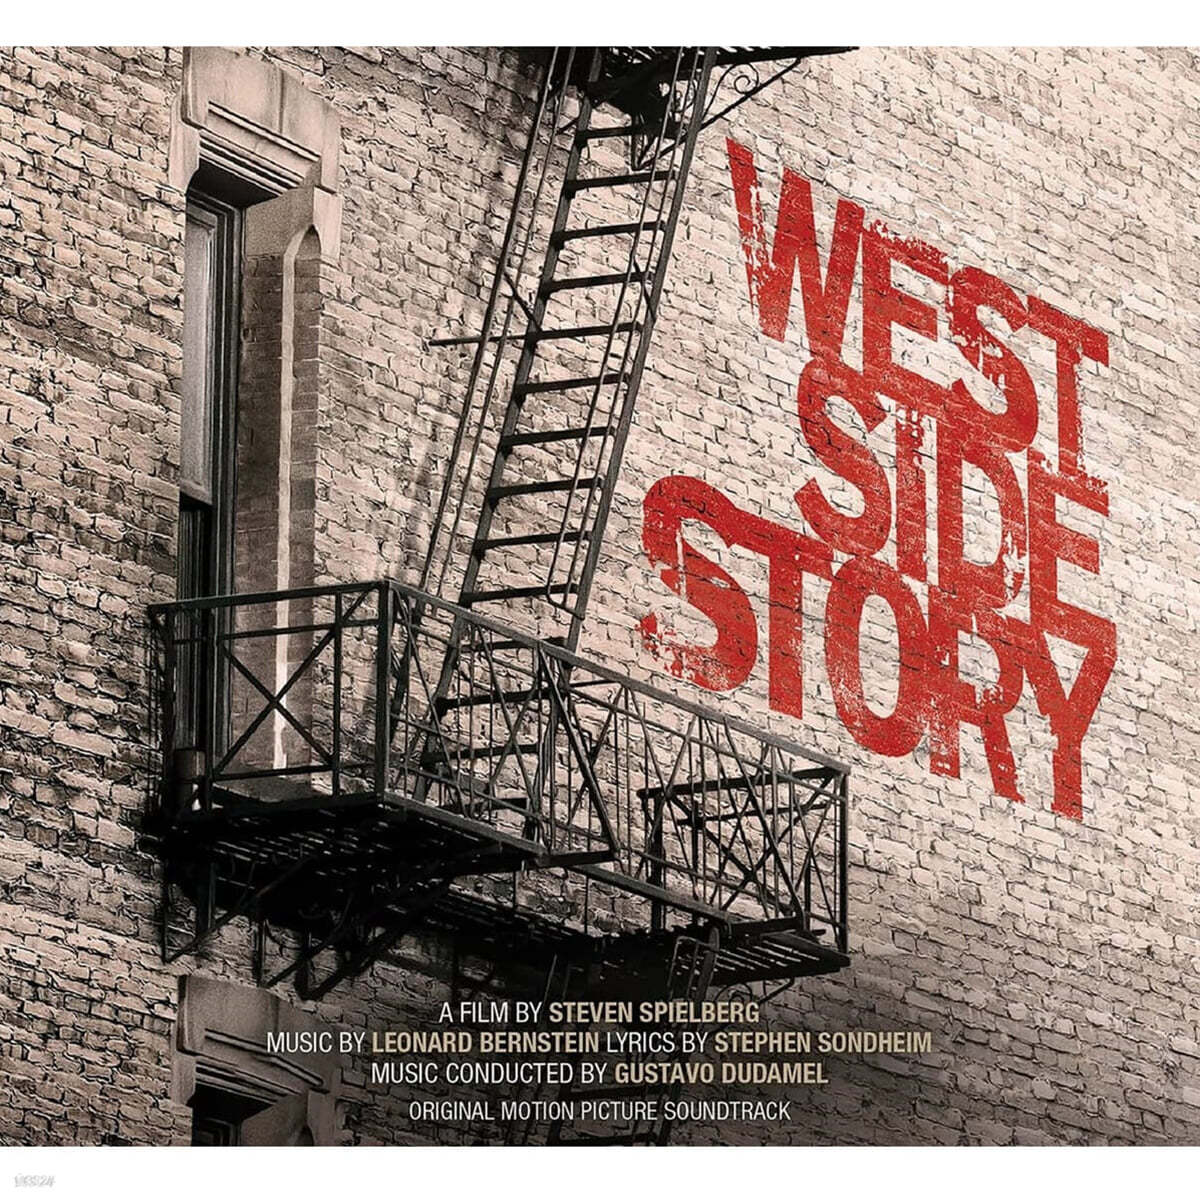 웨스트 사이드 스토리 영화음악 (West Side Story OST by Leonard Bernstein) 